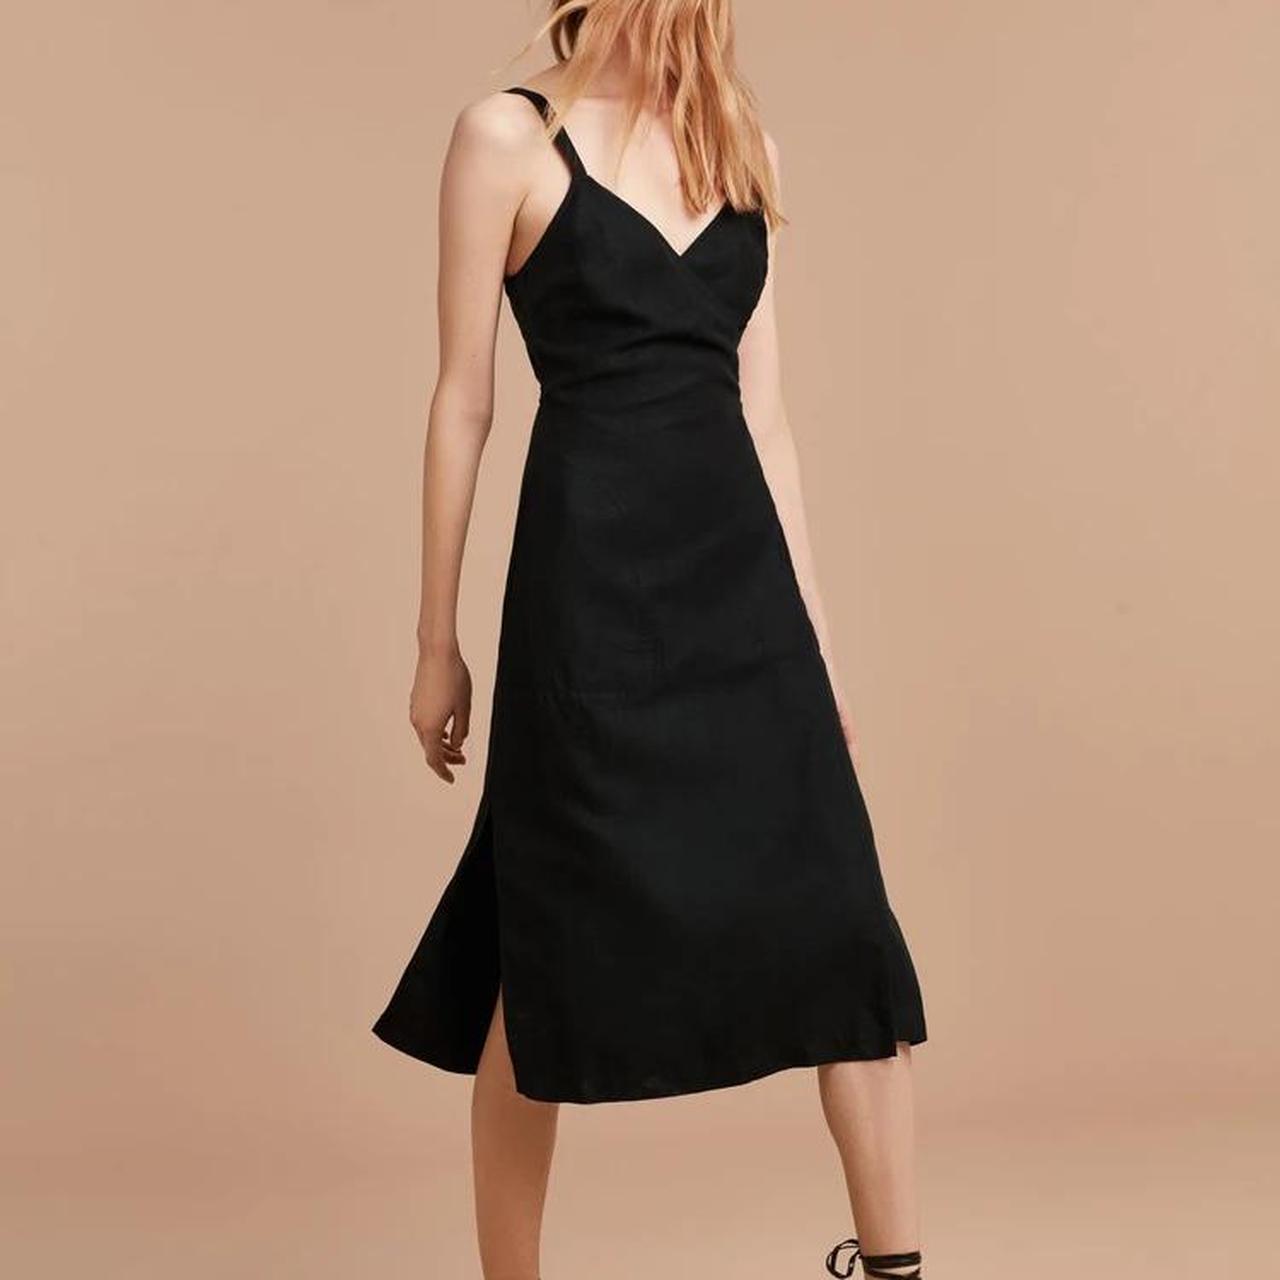 Aritzia Wilfred Astere Wrap Dress in Black size... - Depop